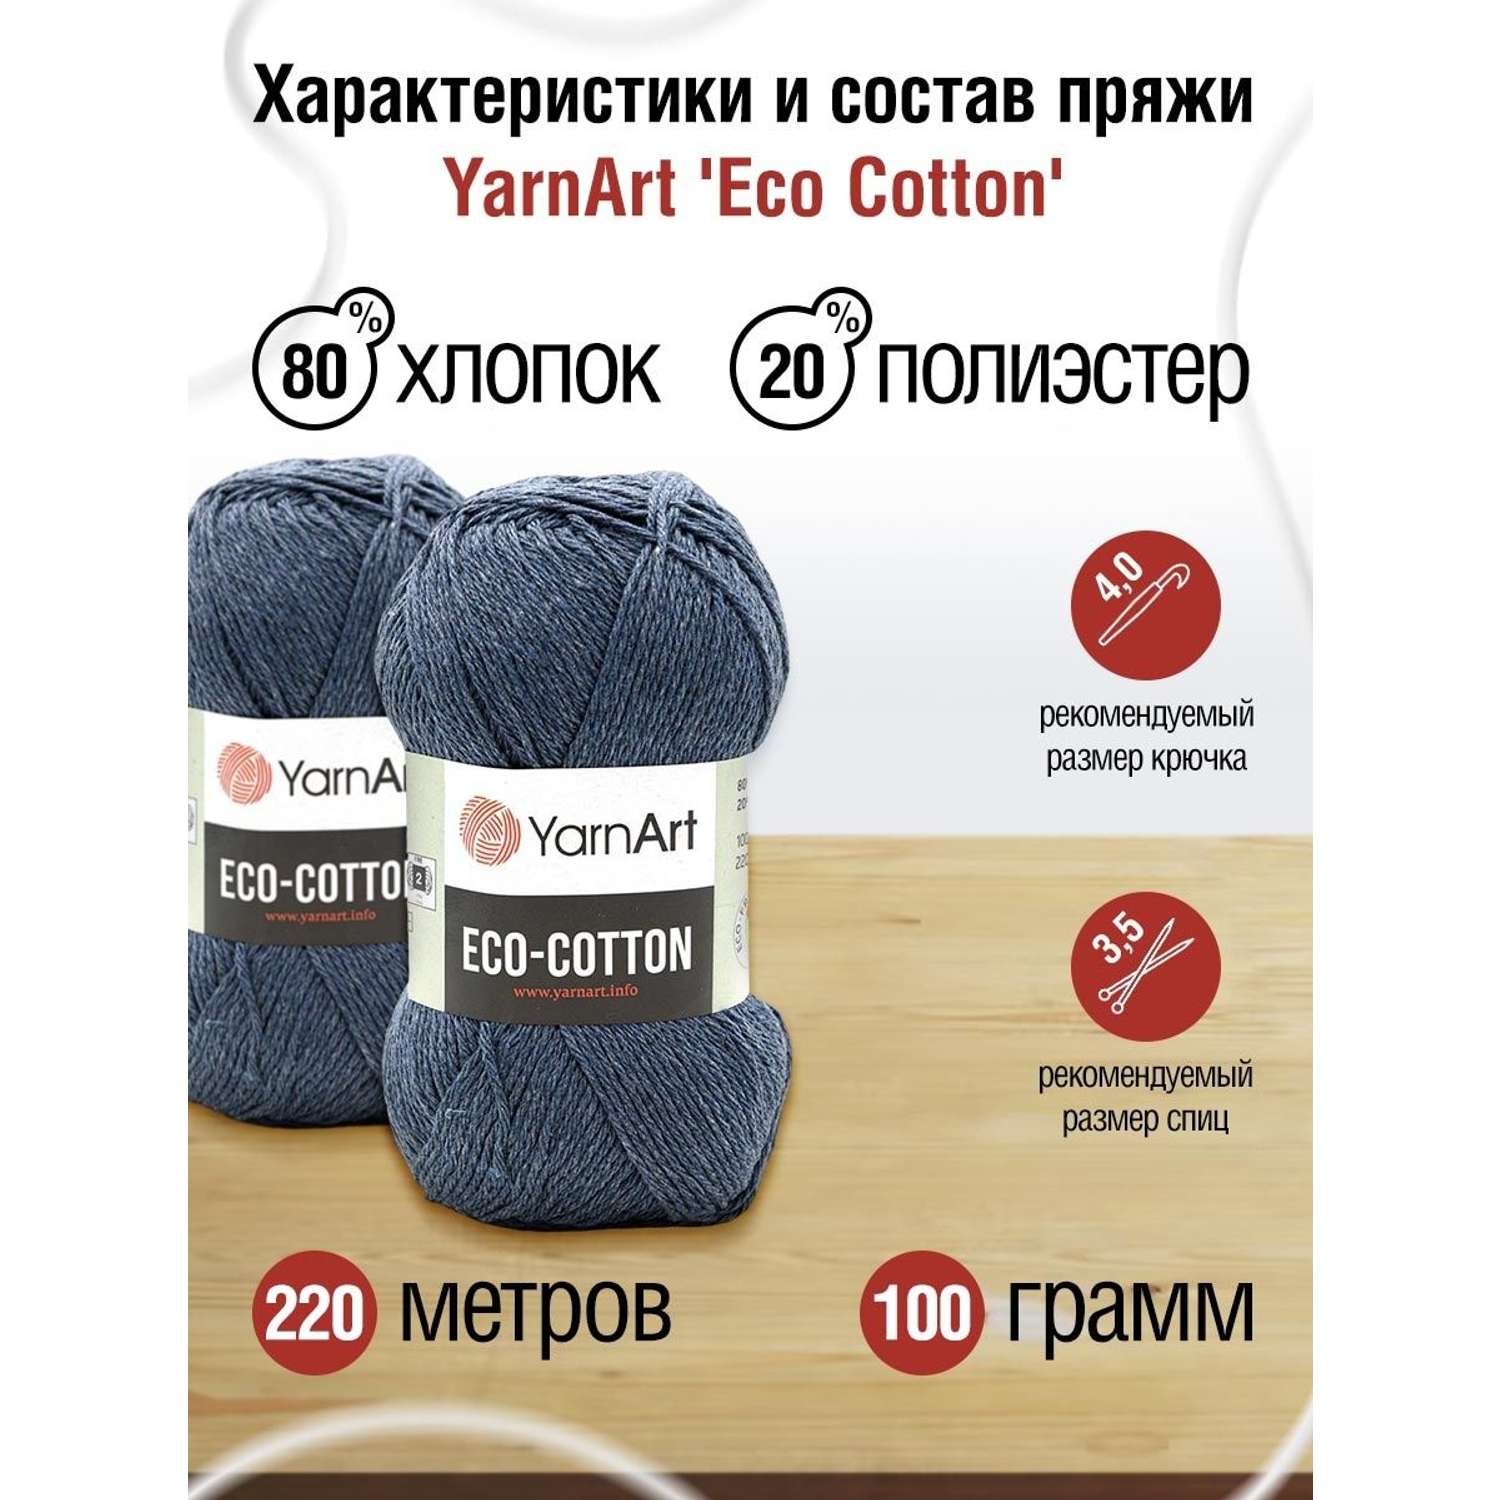 Пряжа YarnArt Eco Cotton комфортная для летних вещей 100 г 220 м 773 джинс 5 мотков - фото 3